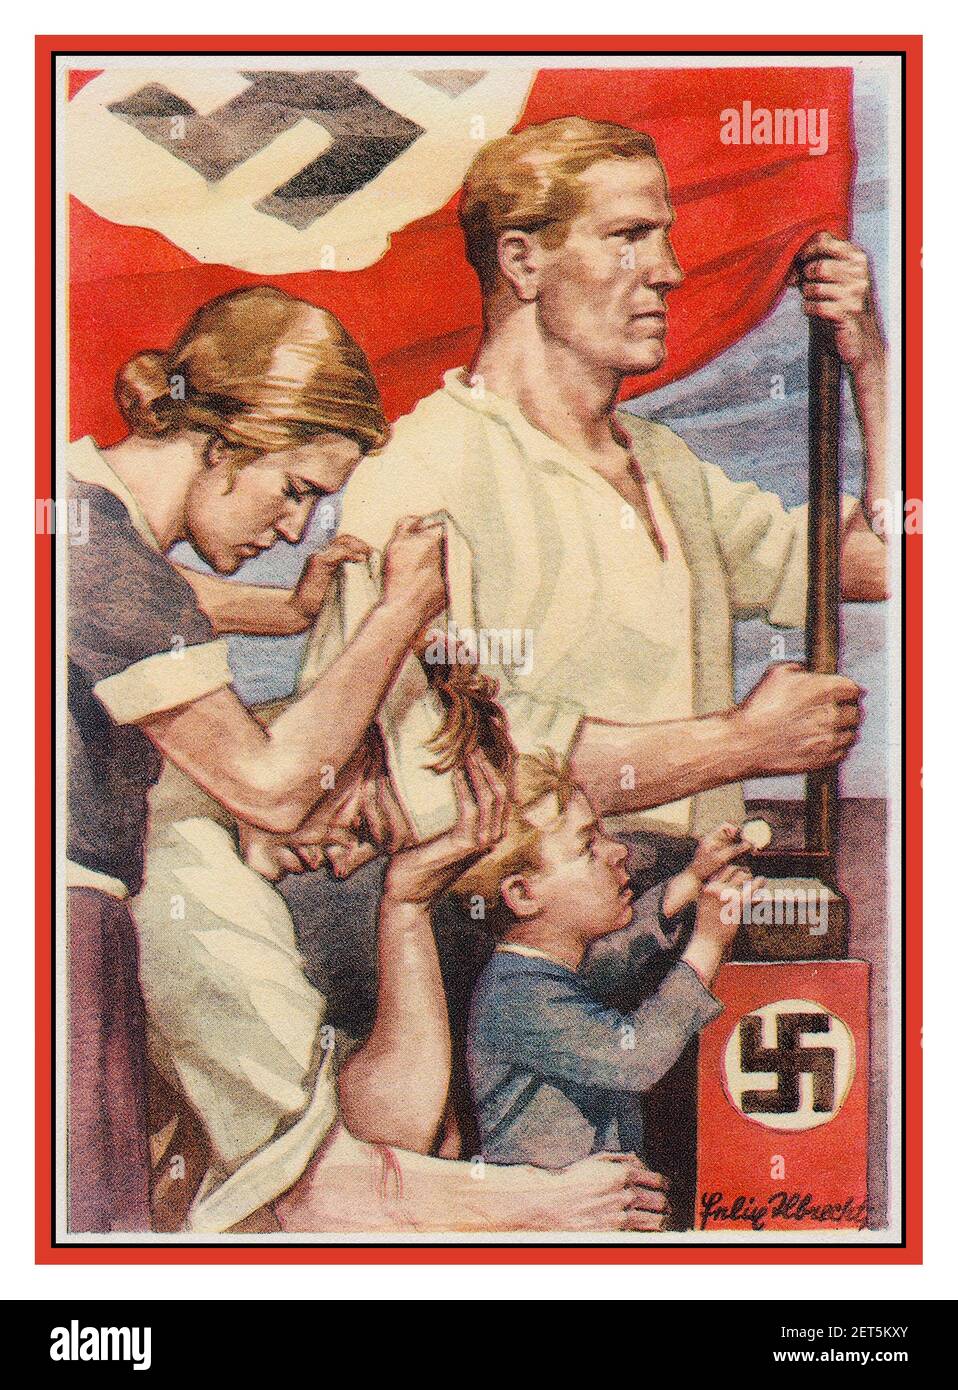 Carte d'affiche vintage des années 1930 NSDAP partie de propagande de don de Felix Albrecht. . Pour les victimes de rue de chemises bruns de la sa -- la femme se liant les combattants du front, et le petit garçon mettant sa pièce dans la boîte de swastika ornée pour aider les pauvres Nazis stormtroopers.1931 Banque D'Images